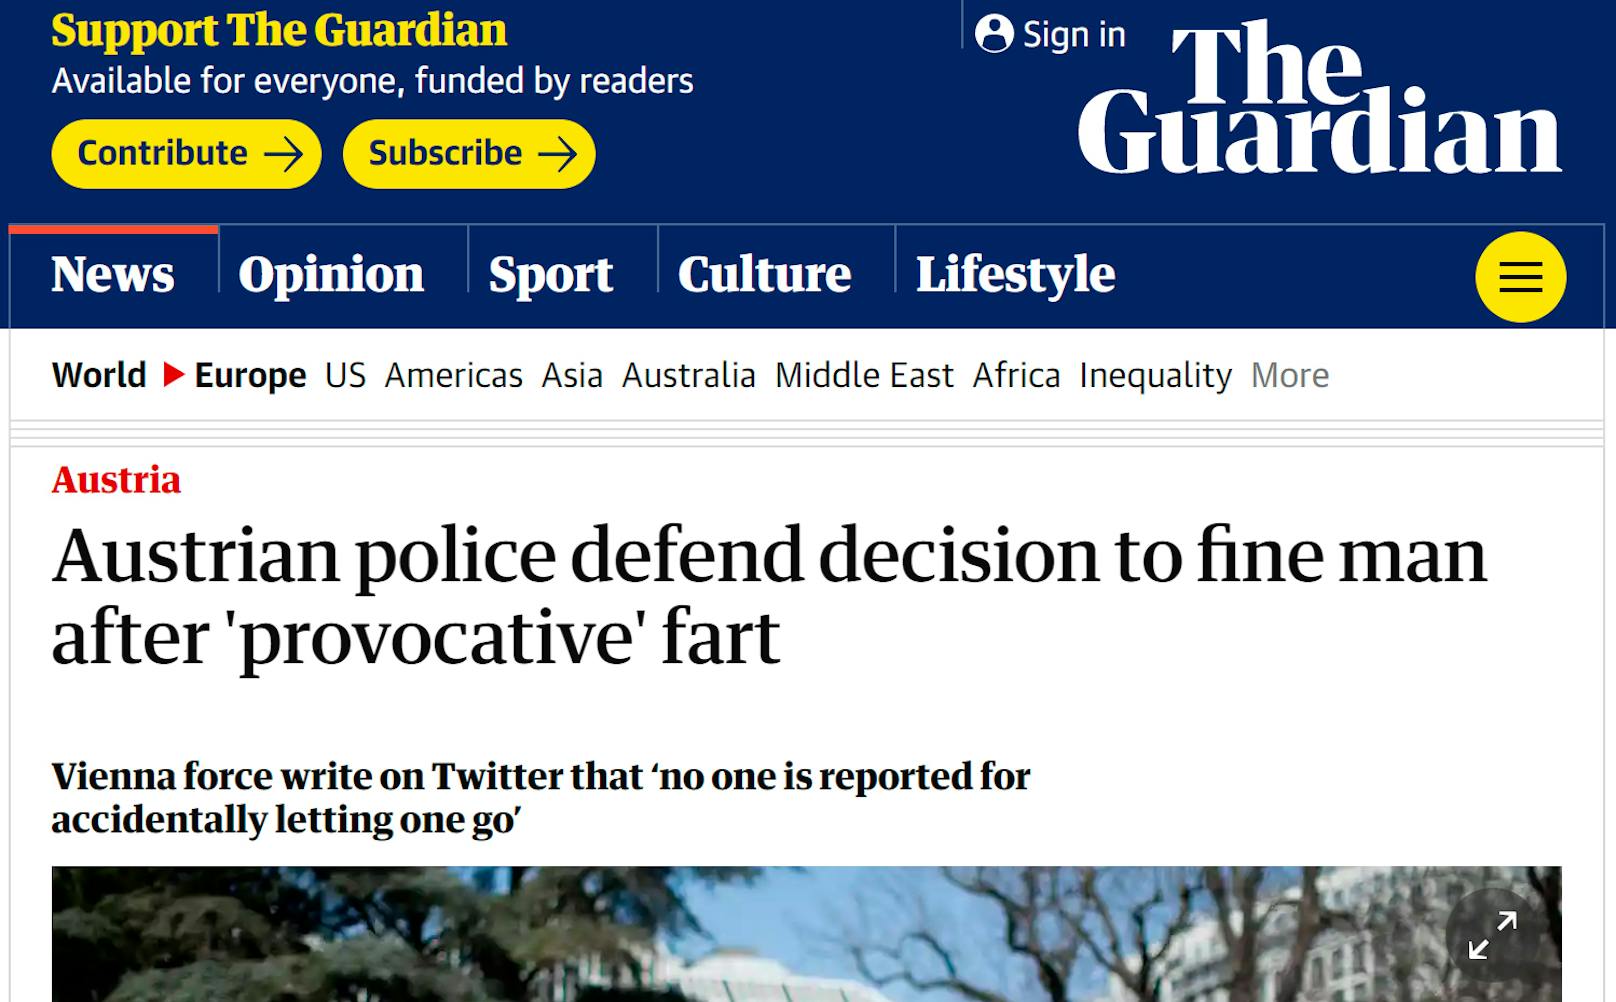 ...als auch der "Guardian" berichteten über den "provokativen Furz".